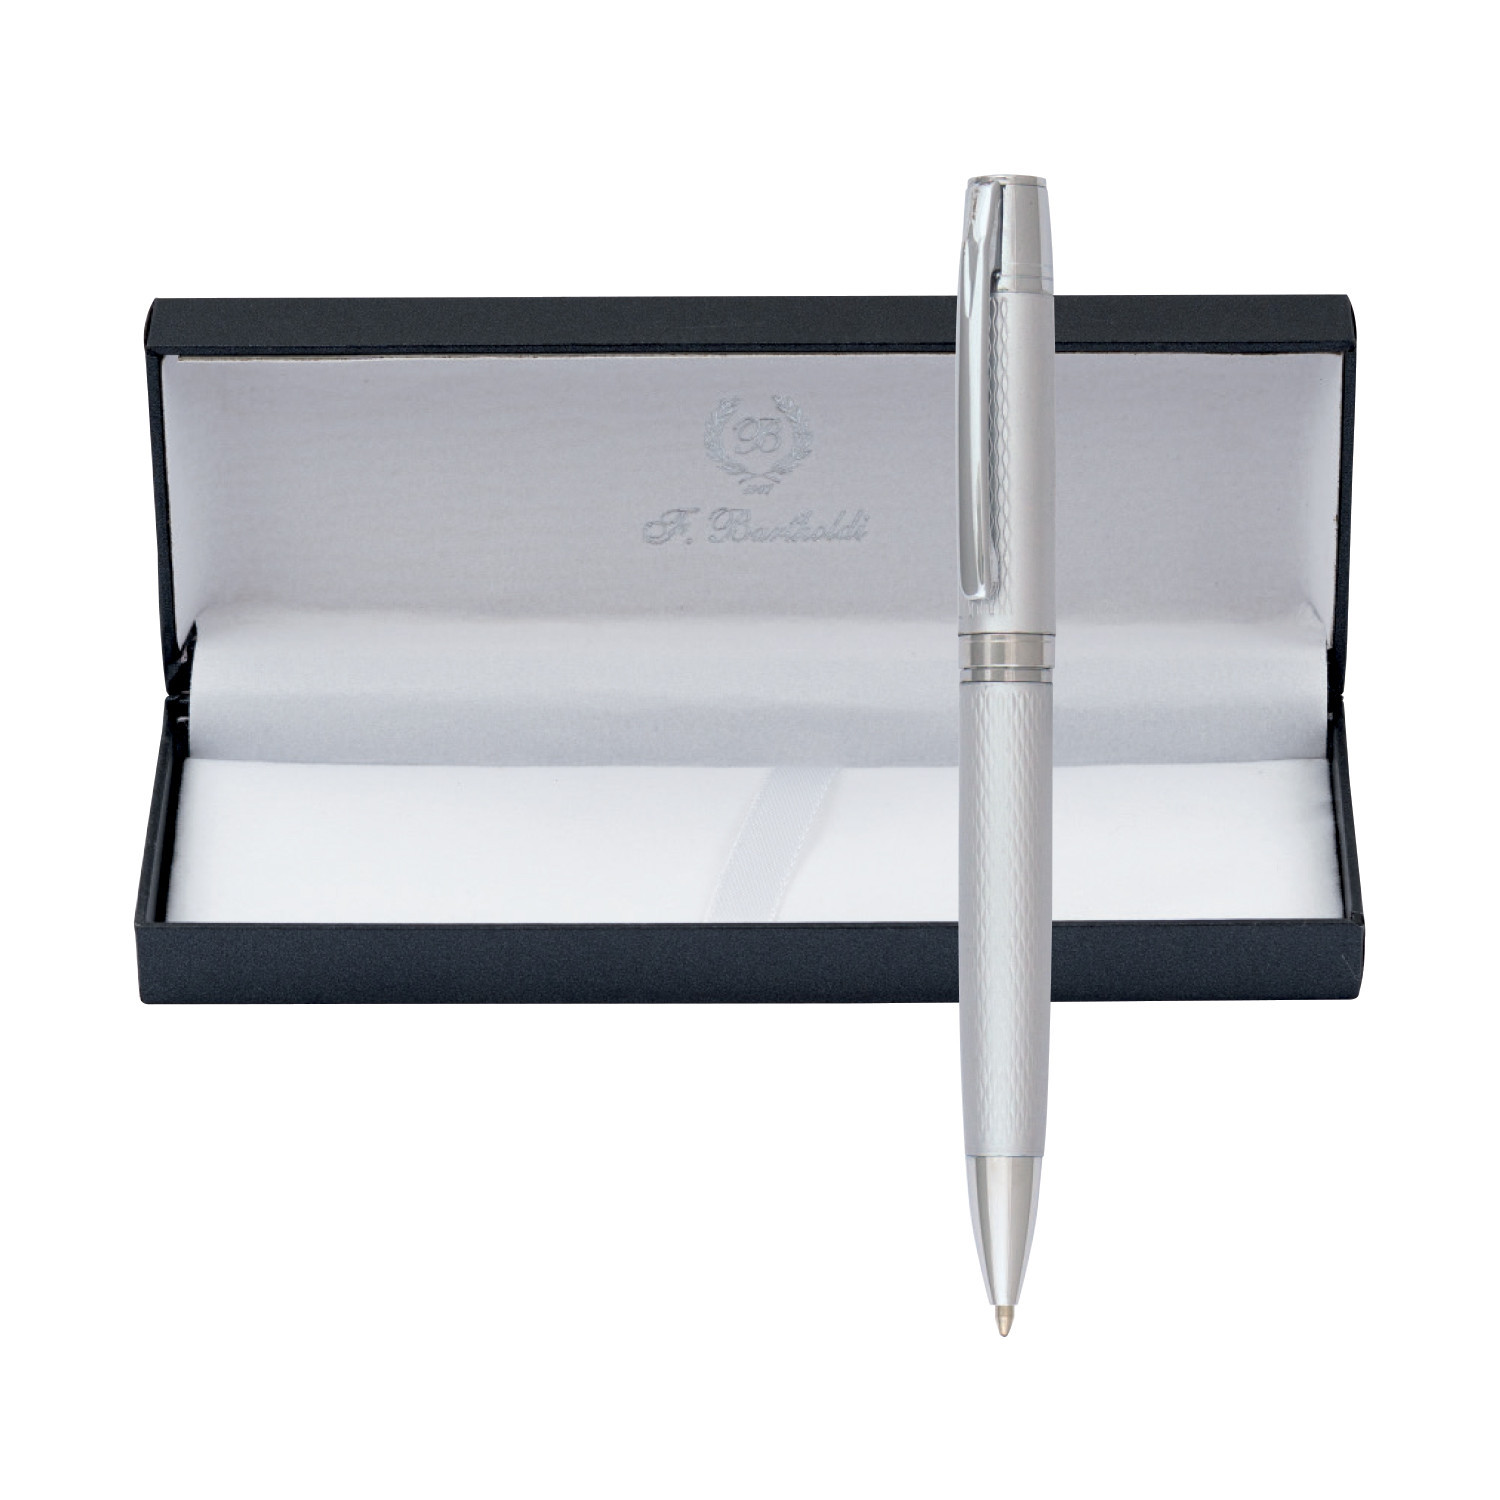 Mетална химикалка Avignon 2109-Box, в кутия, сребърен